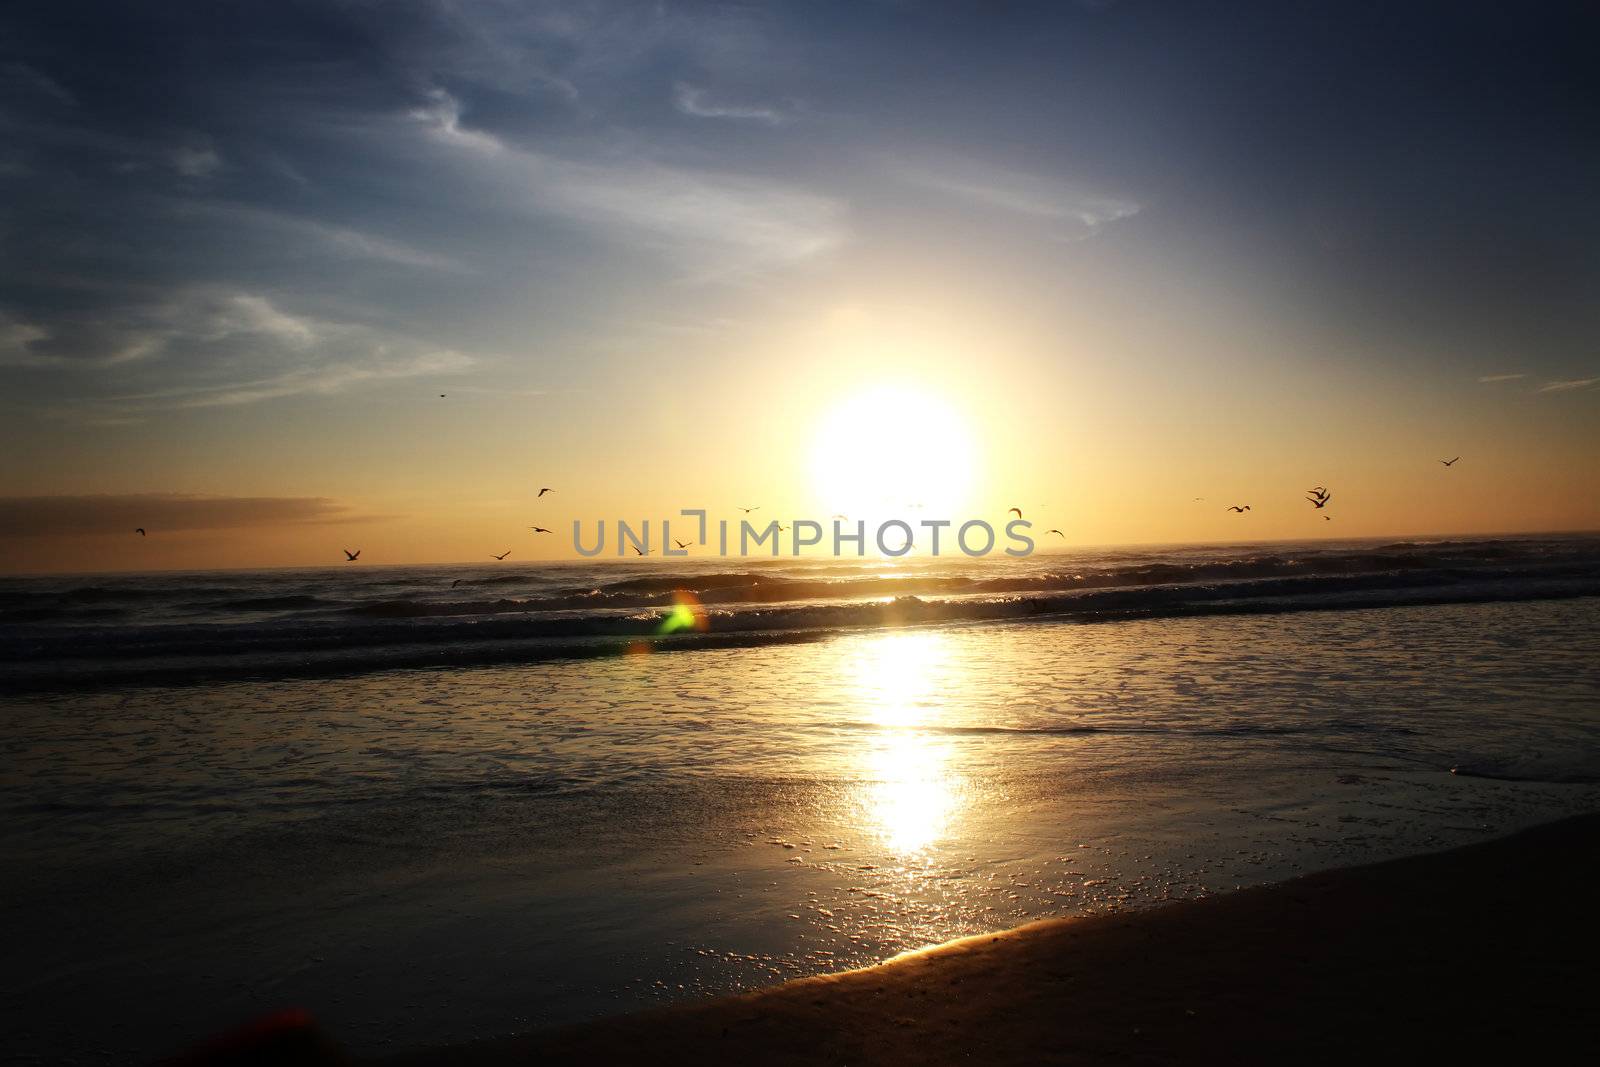 dayton beach sunrise by amandaols